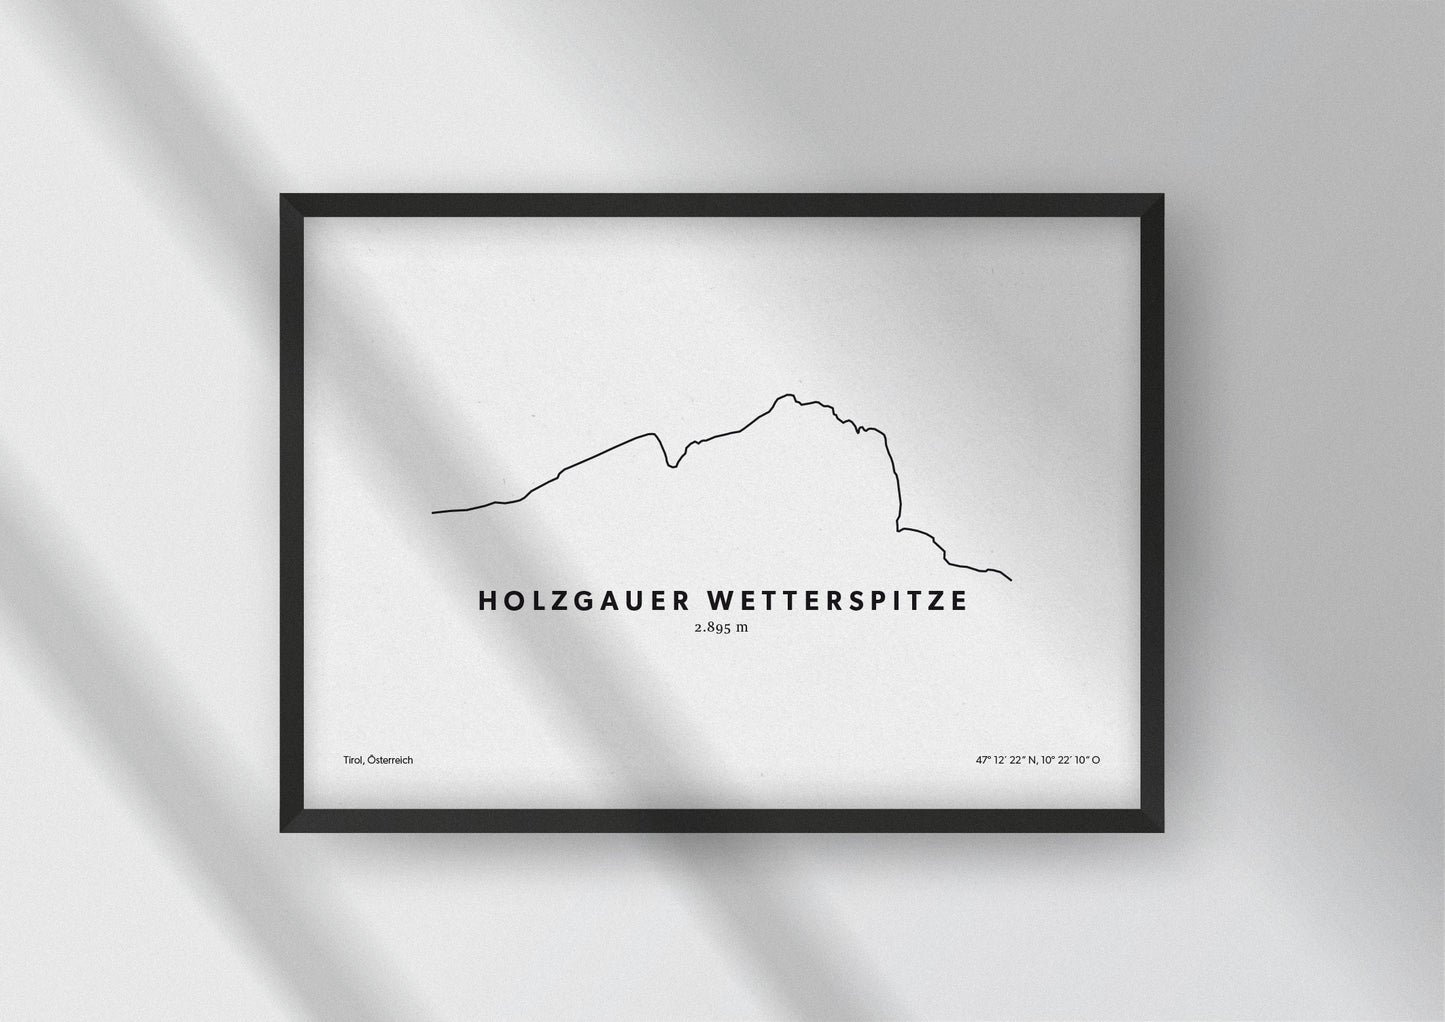 Minimalistische Illustration der Holzgauer Wetterspitze in Tirol, als stilvoller Einrichtungsgegenstand für Zuhause.